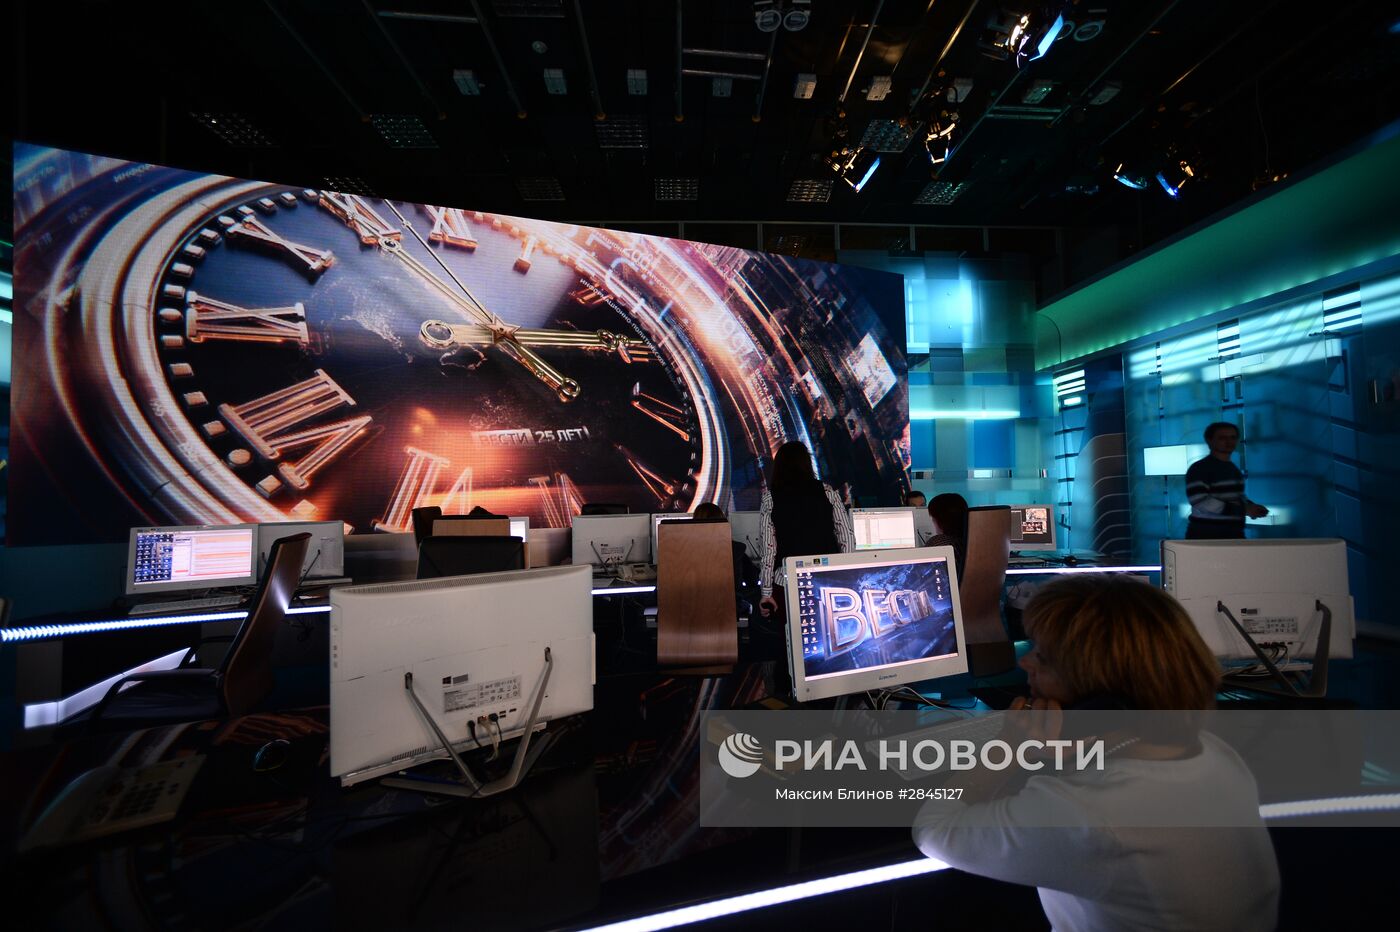 "Вести": 25 лет в эфире российского телевидения